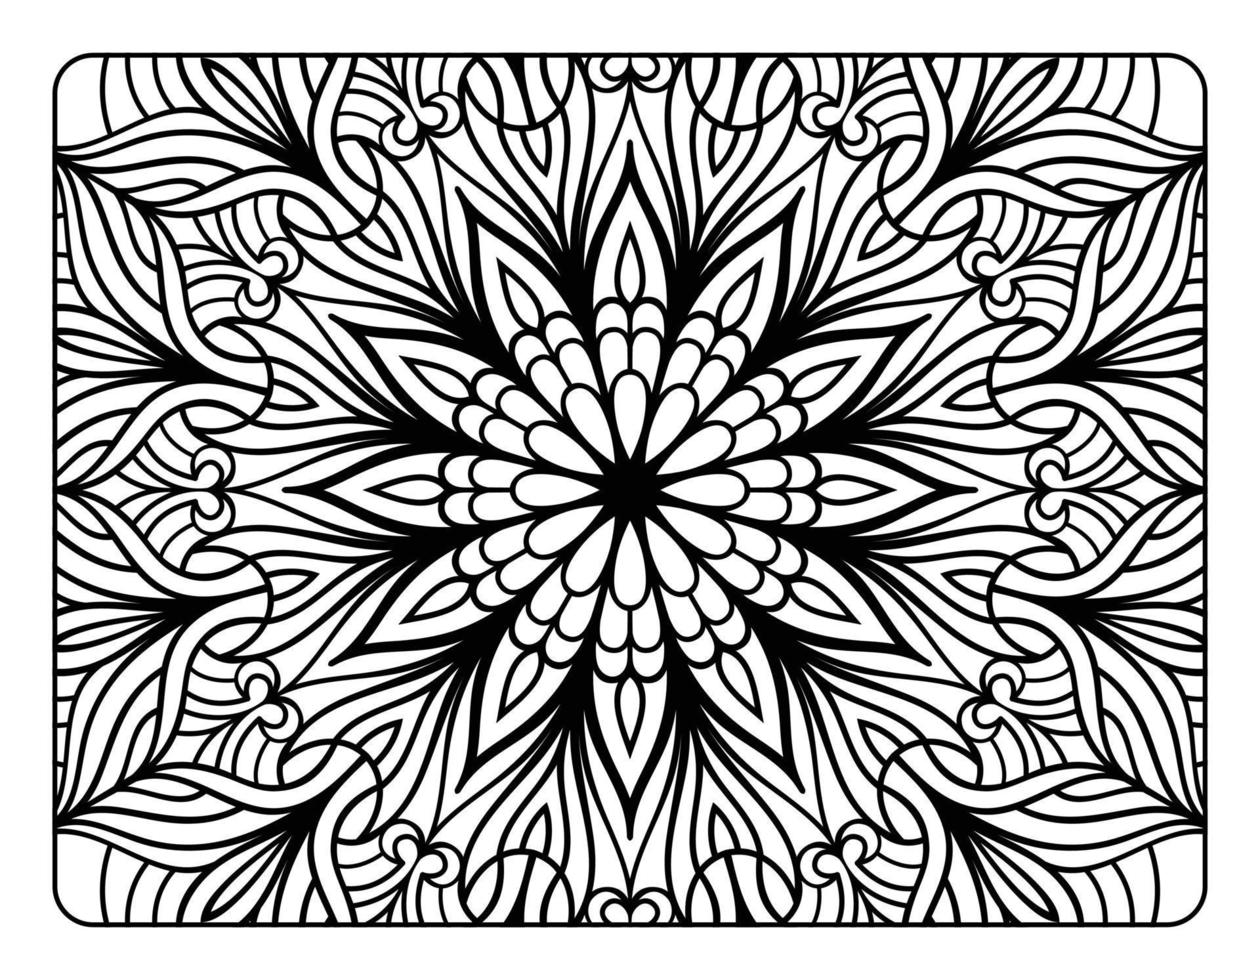 página de coloração floral de mandala para livro de colorir adulto, página de coloração de mandala preto e branco, arte de linha de doodle desenhada à mão para interior de página de coloração adulta vetor